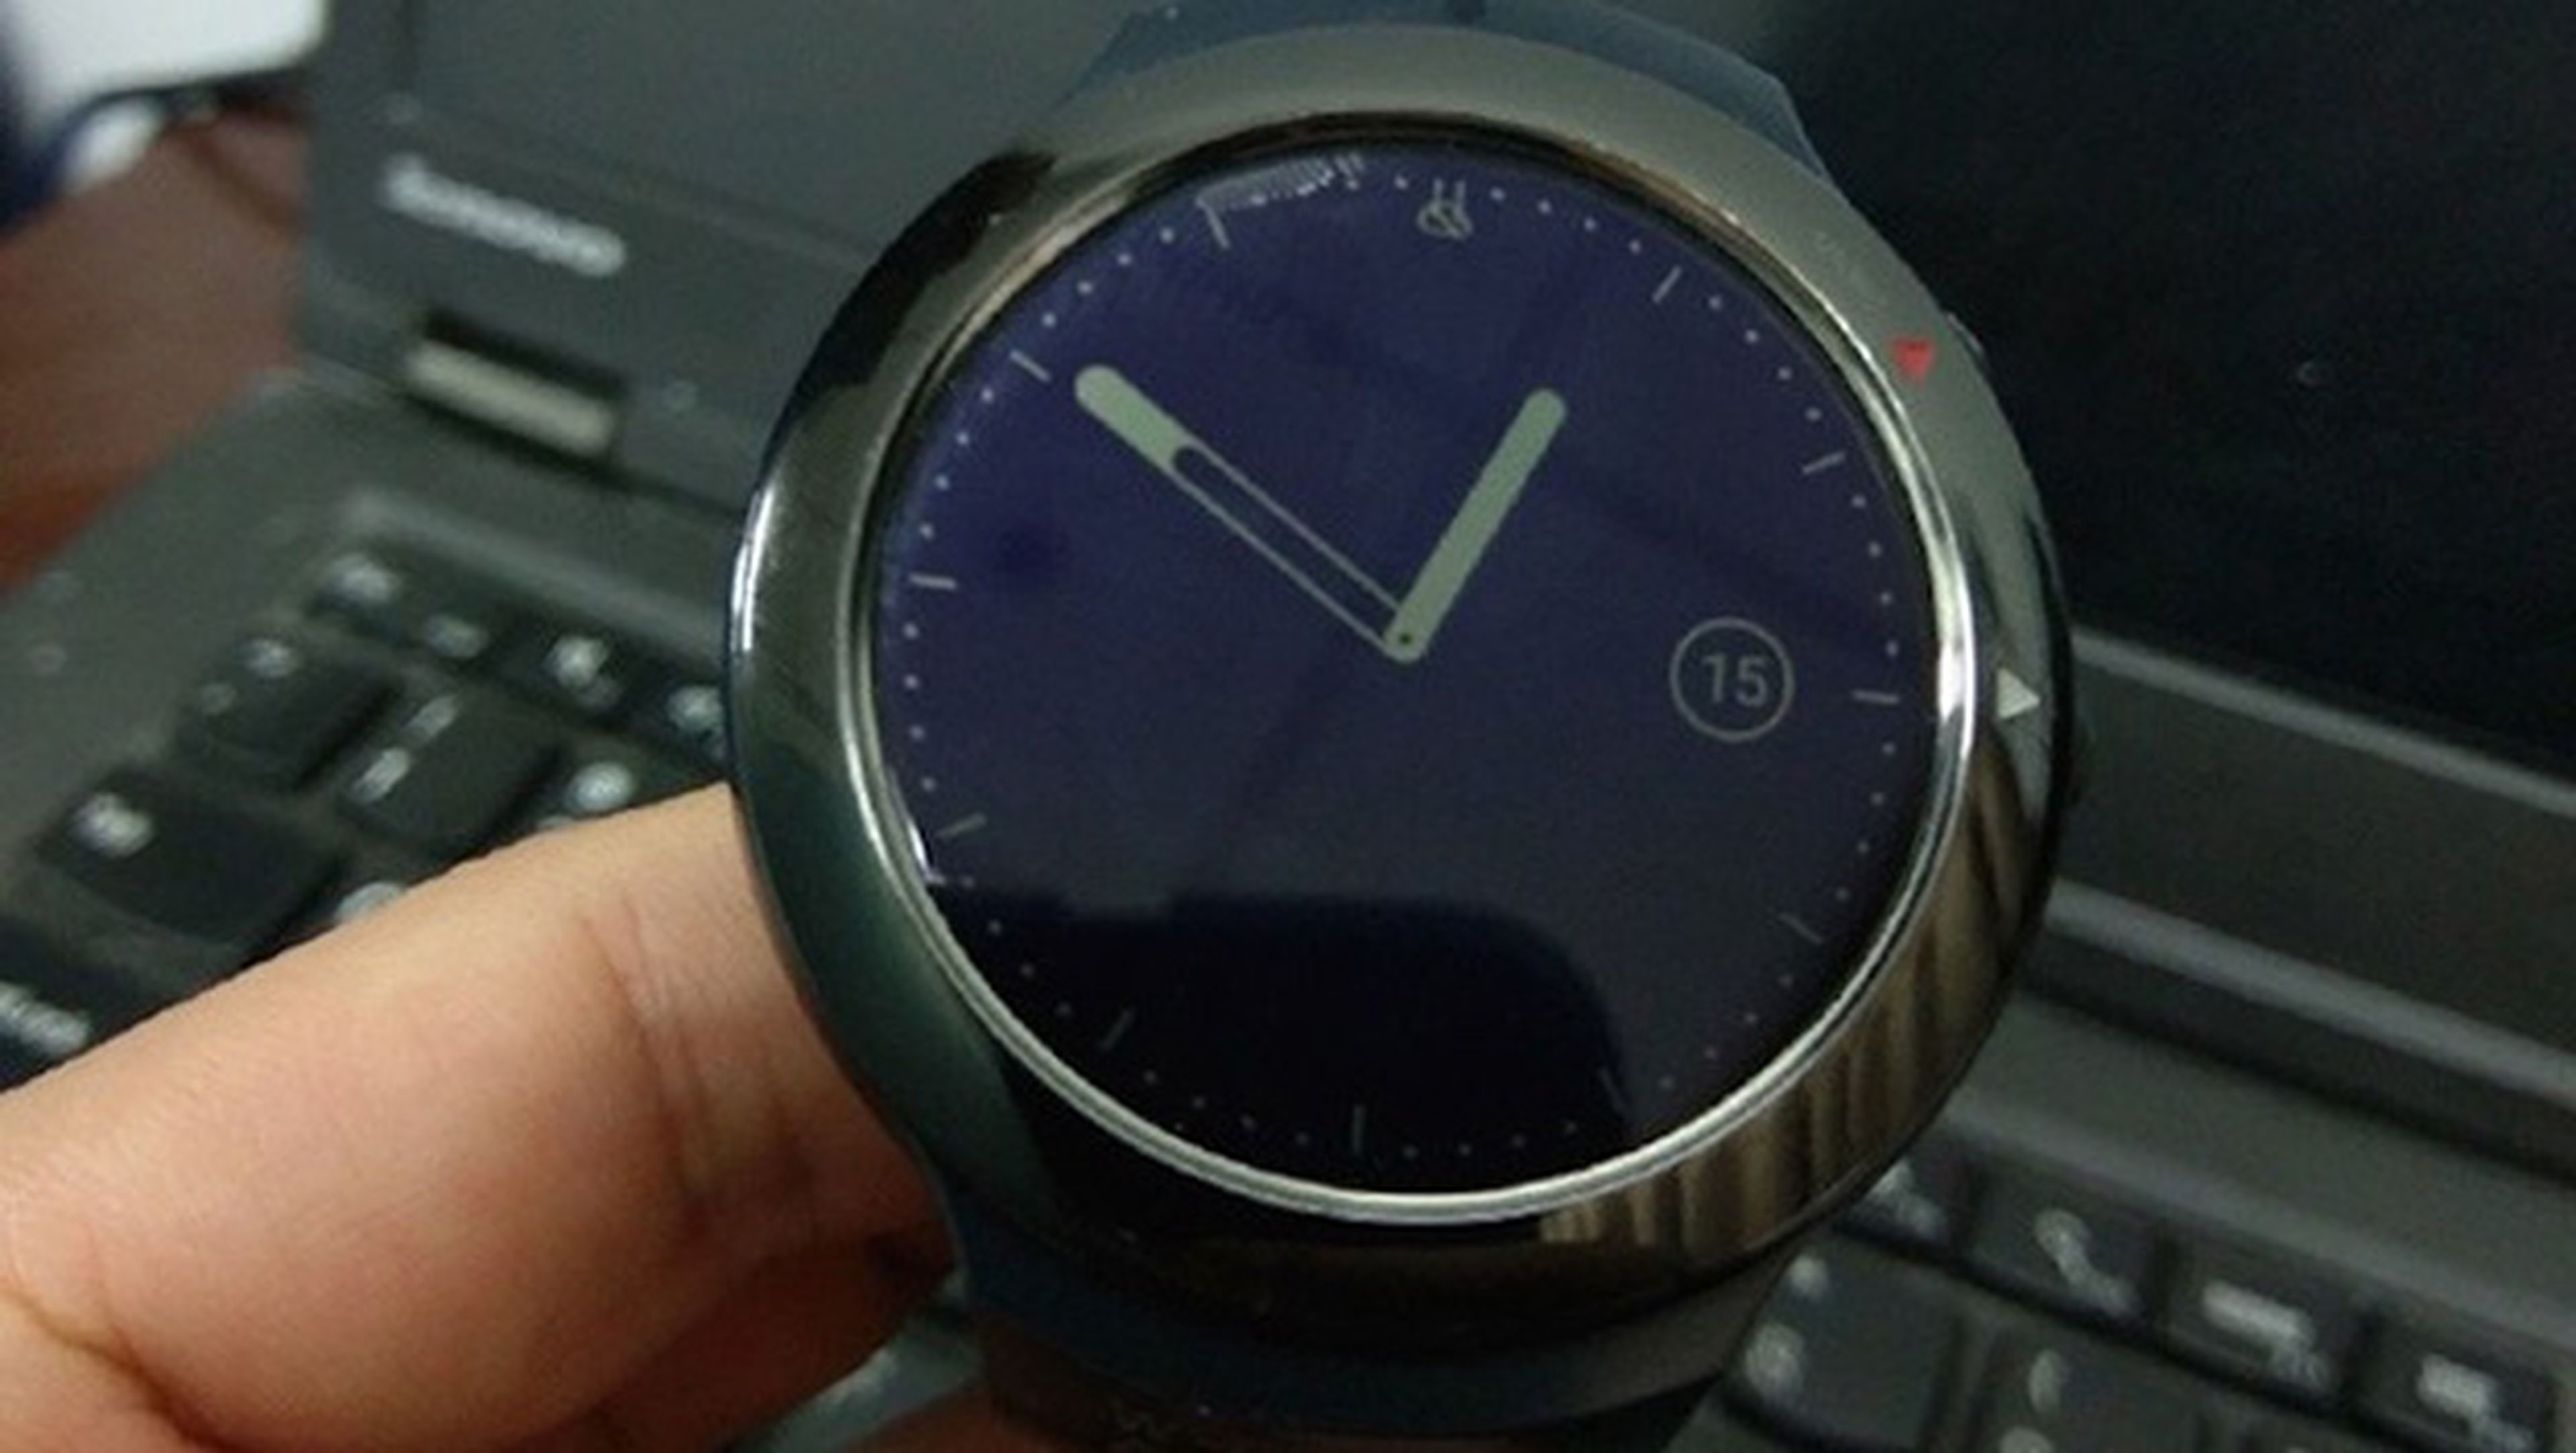 Aparecen imágenes del primer smartwatch de HTC con Android Wear